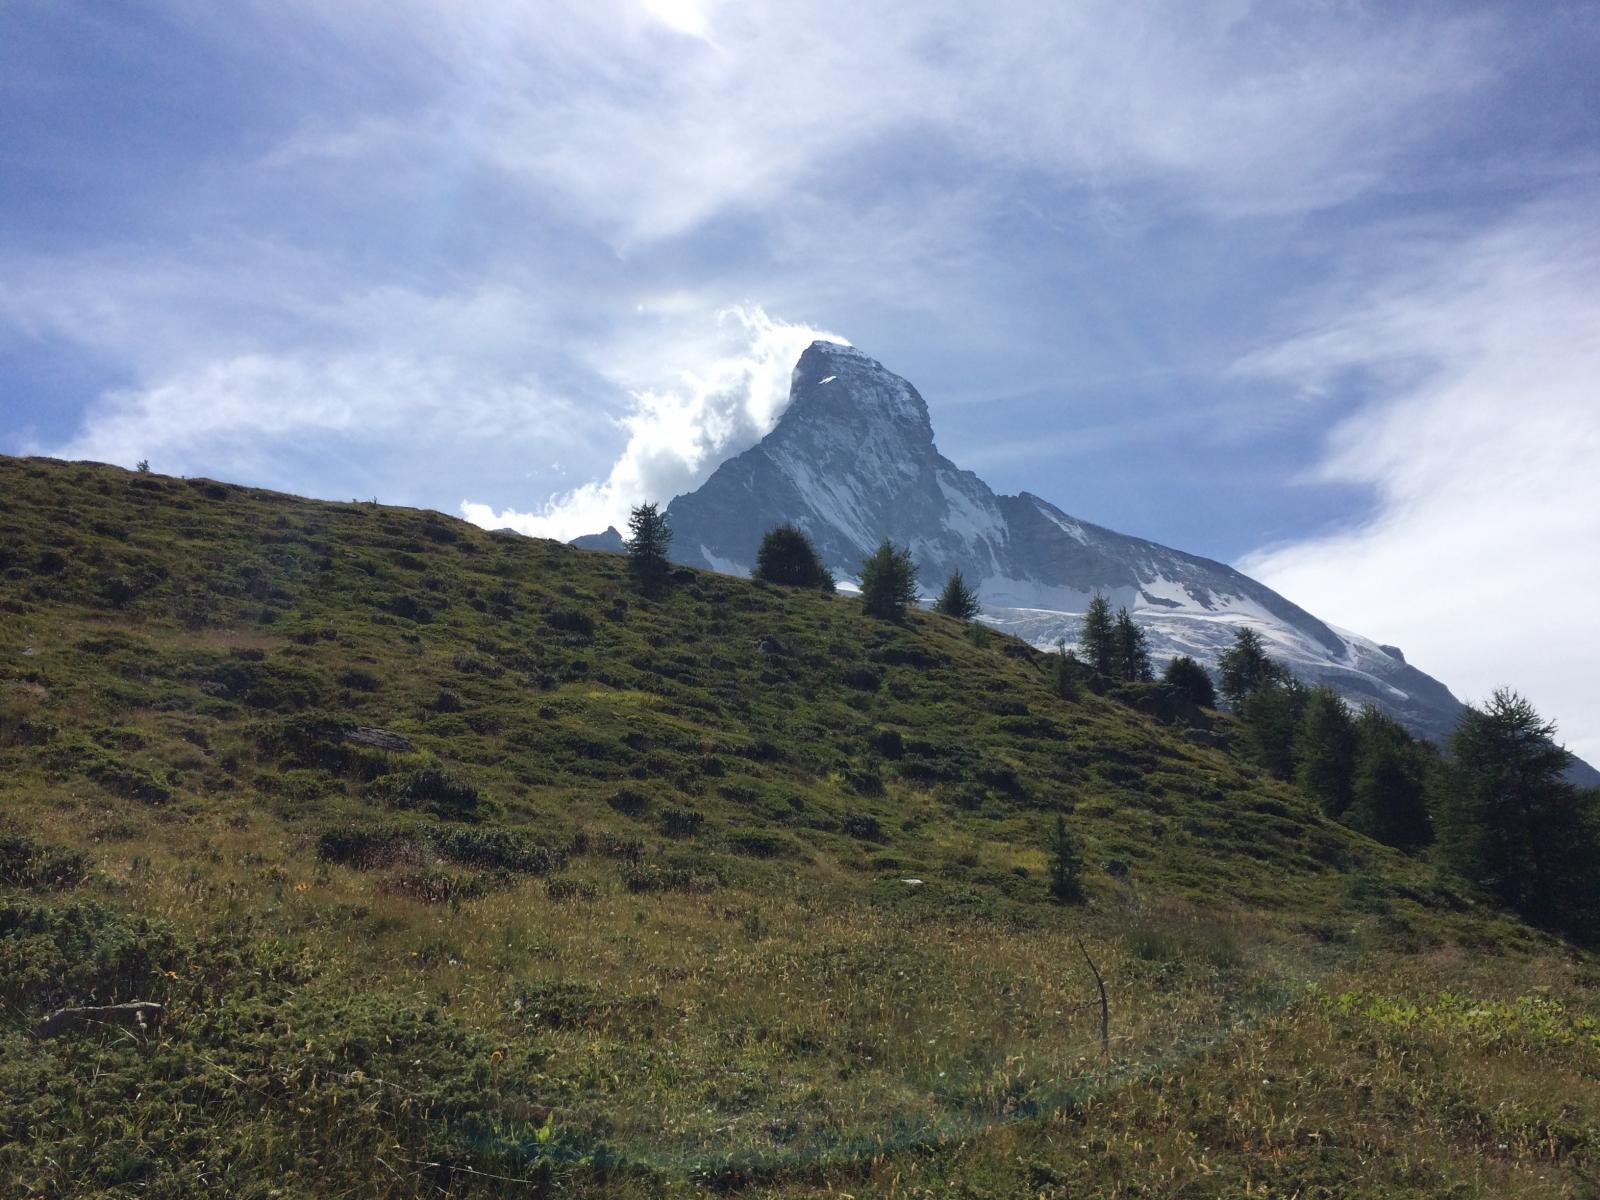 North face of the Matterhorn